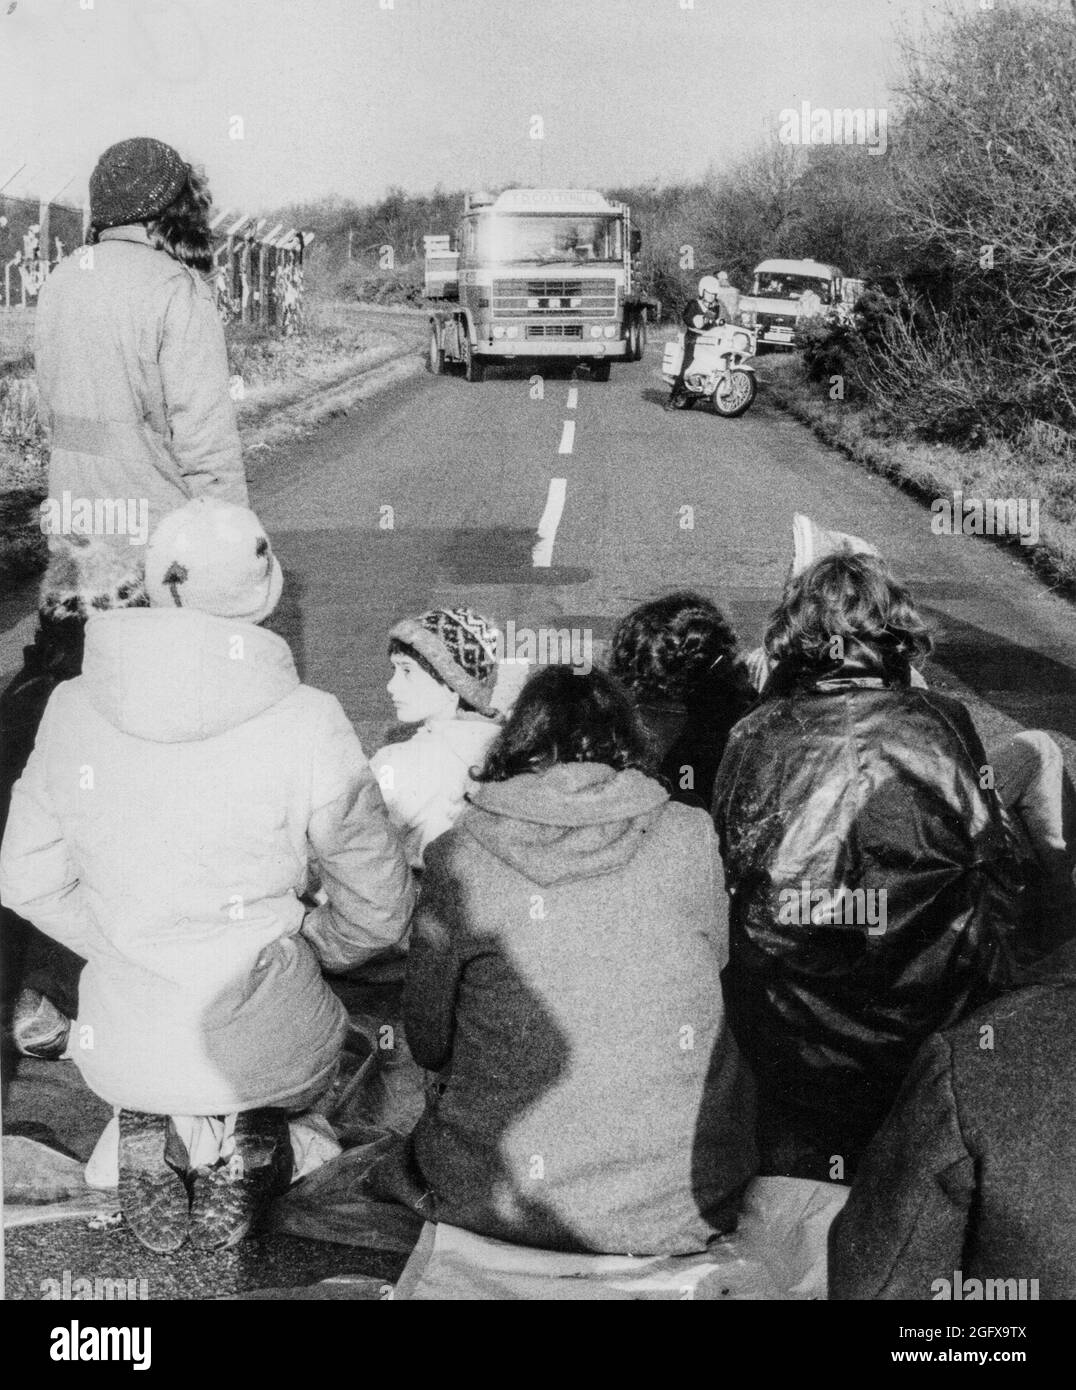 Le donne del Greenham Common Womens Peace Camp si siedono attraverso una strada che ostruisce il traffico, tra cui una motocicletta e un camion della polizia. Foto Stock